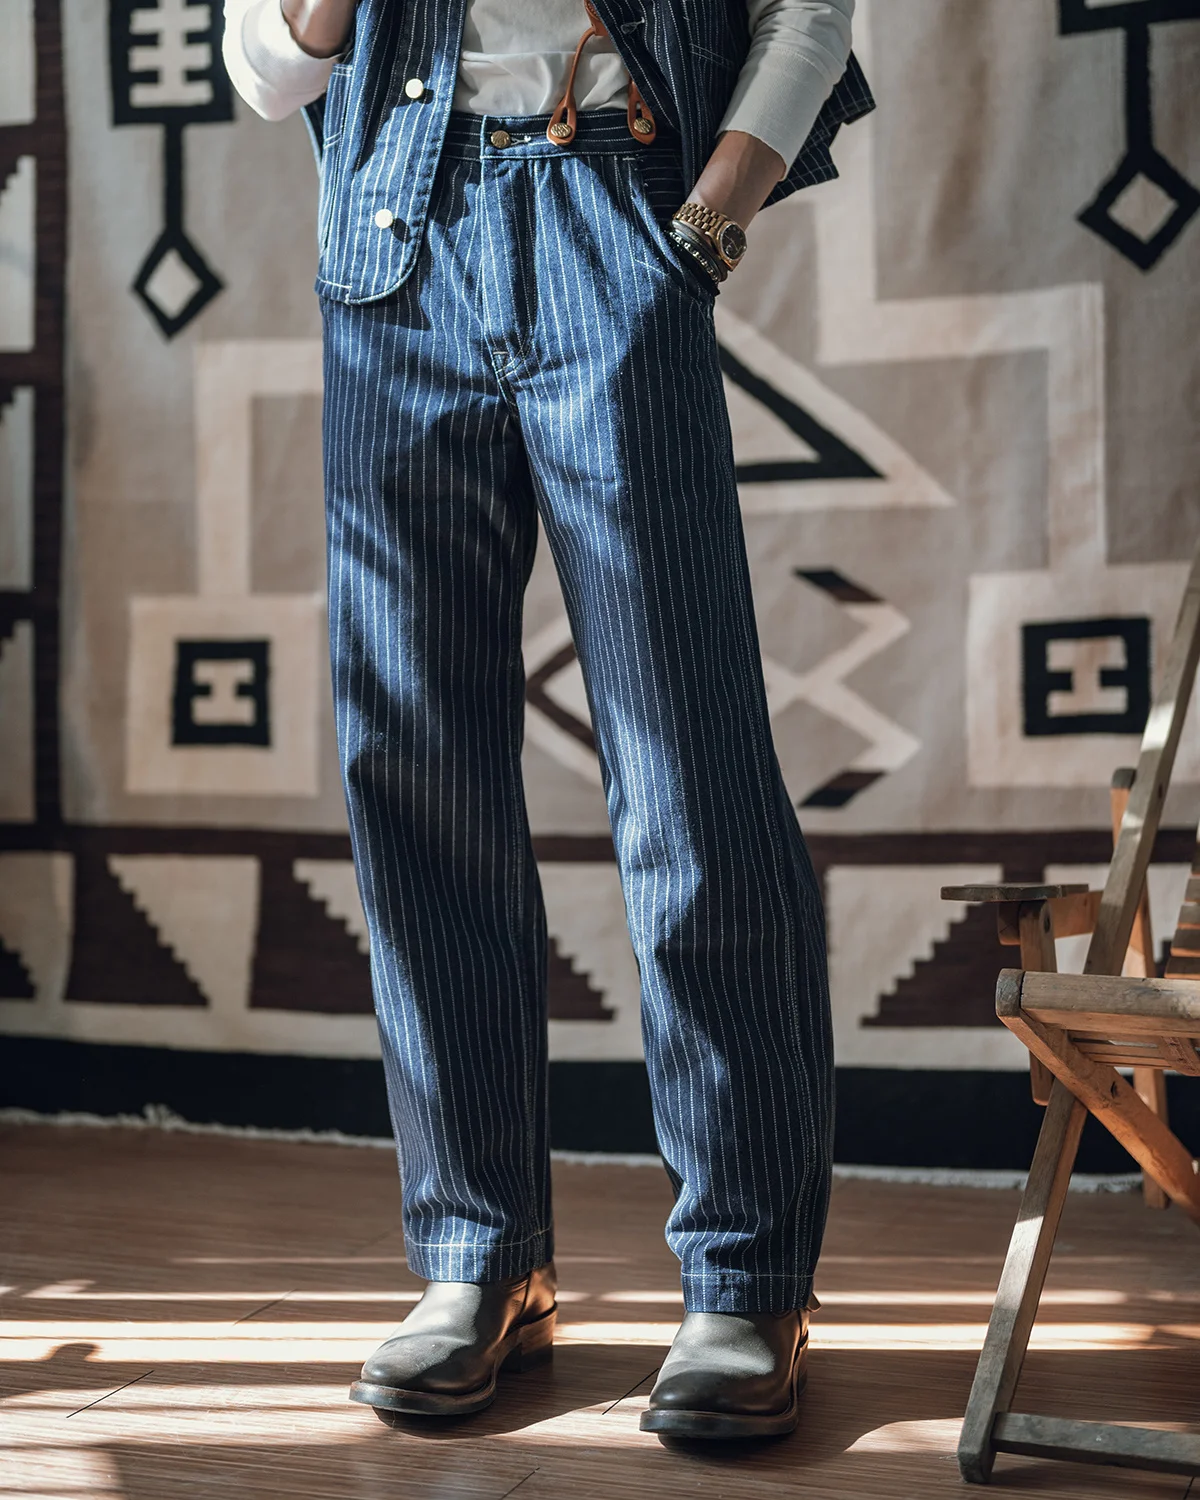 

Не в наличии, комбинезон на талии 1920-х, джинсы в полоску, мужские рабочие брюки цвета индиго в стиле ретро